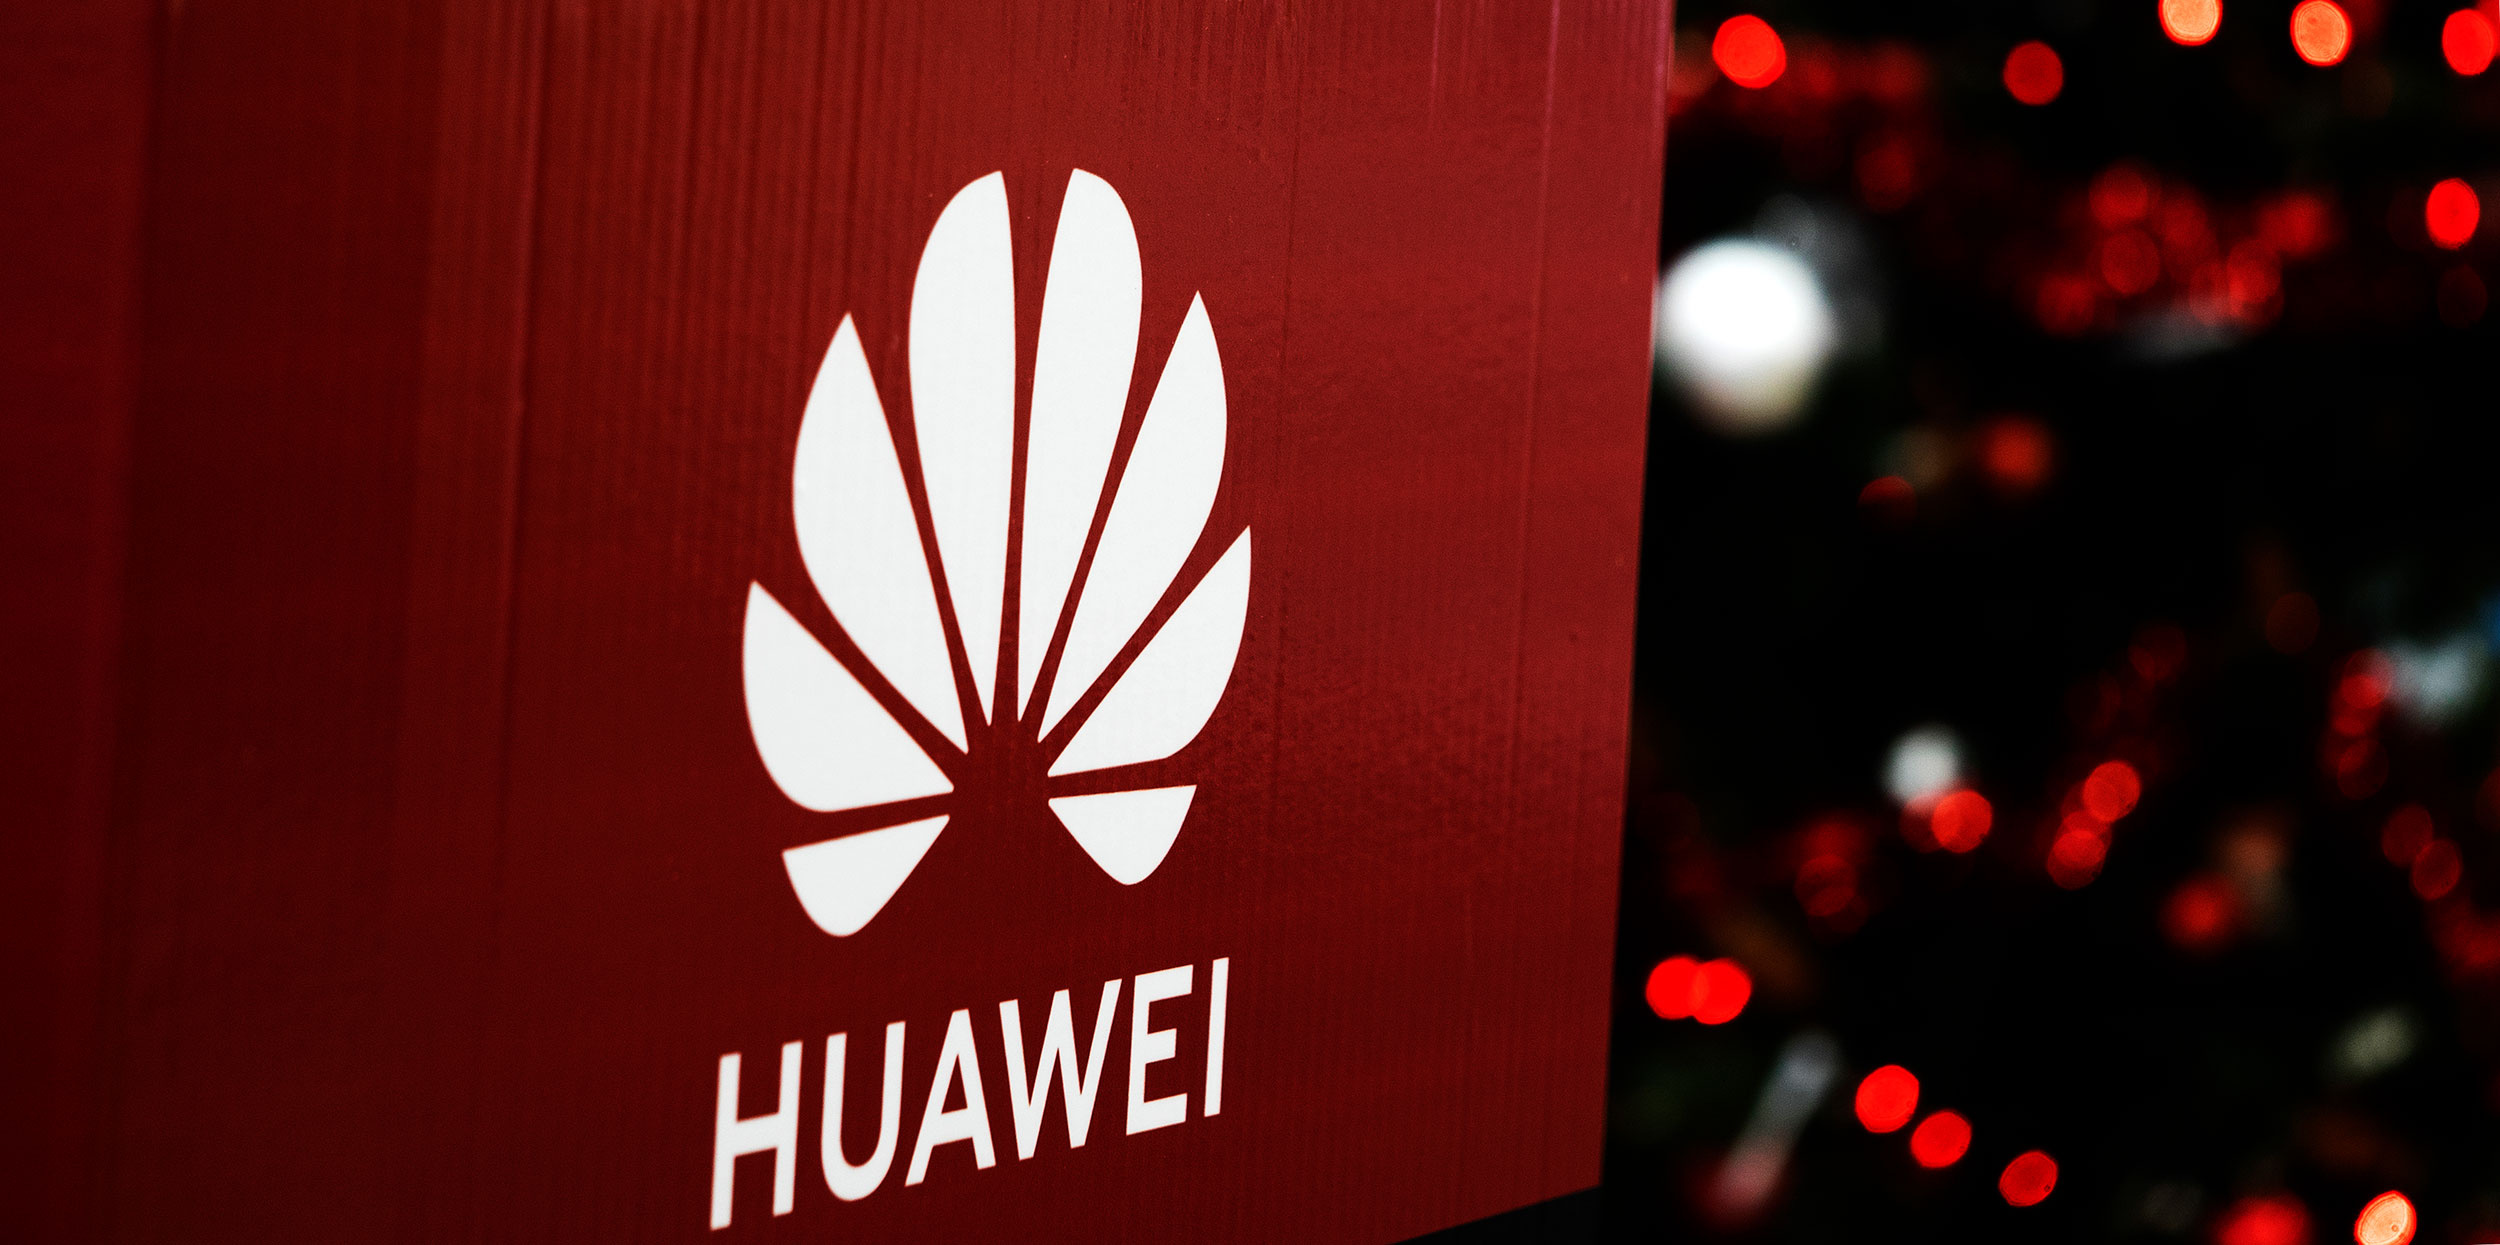 Huawei logo, Watch Live, MWC conference, TechCrunch's article, 2500x1250 Dual Screen Desktop